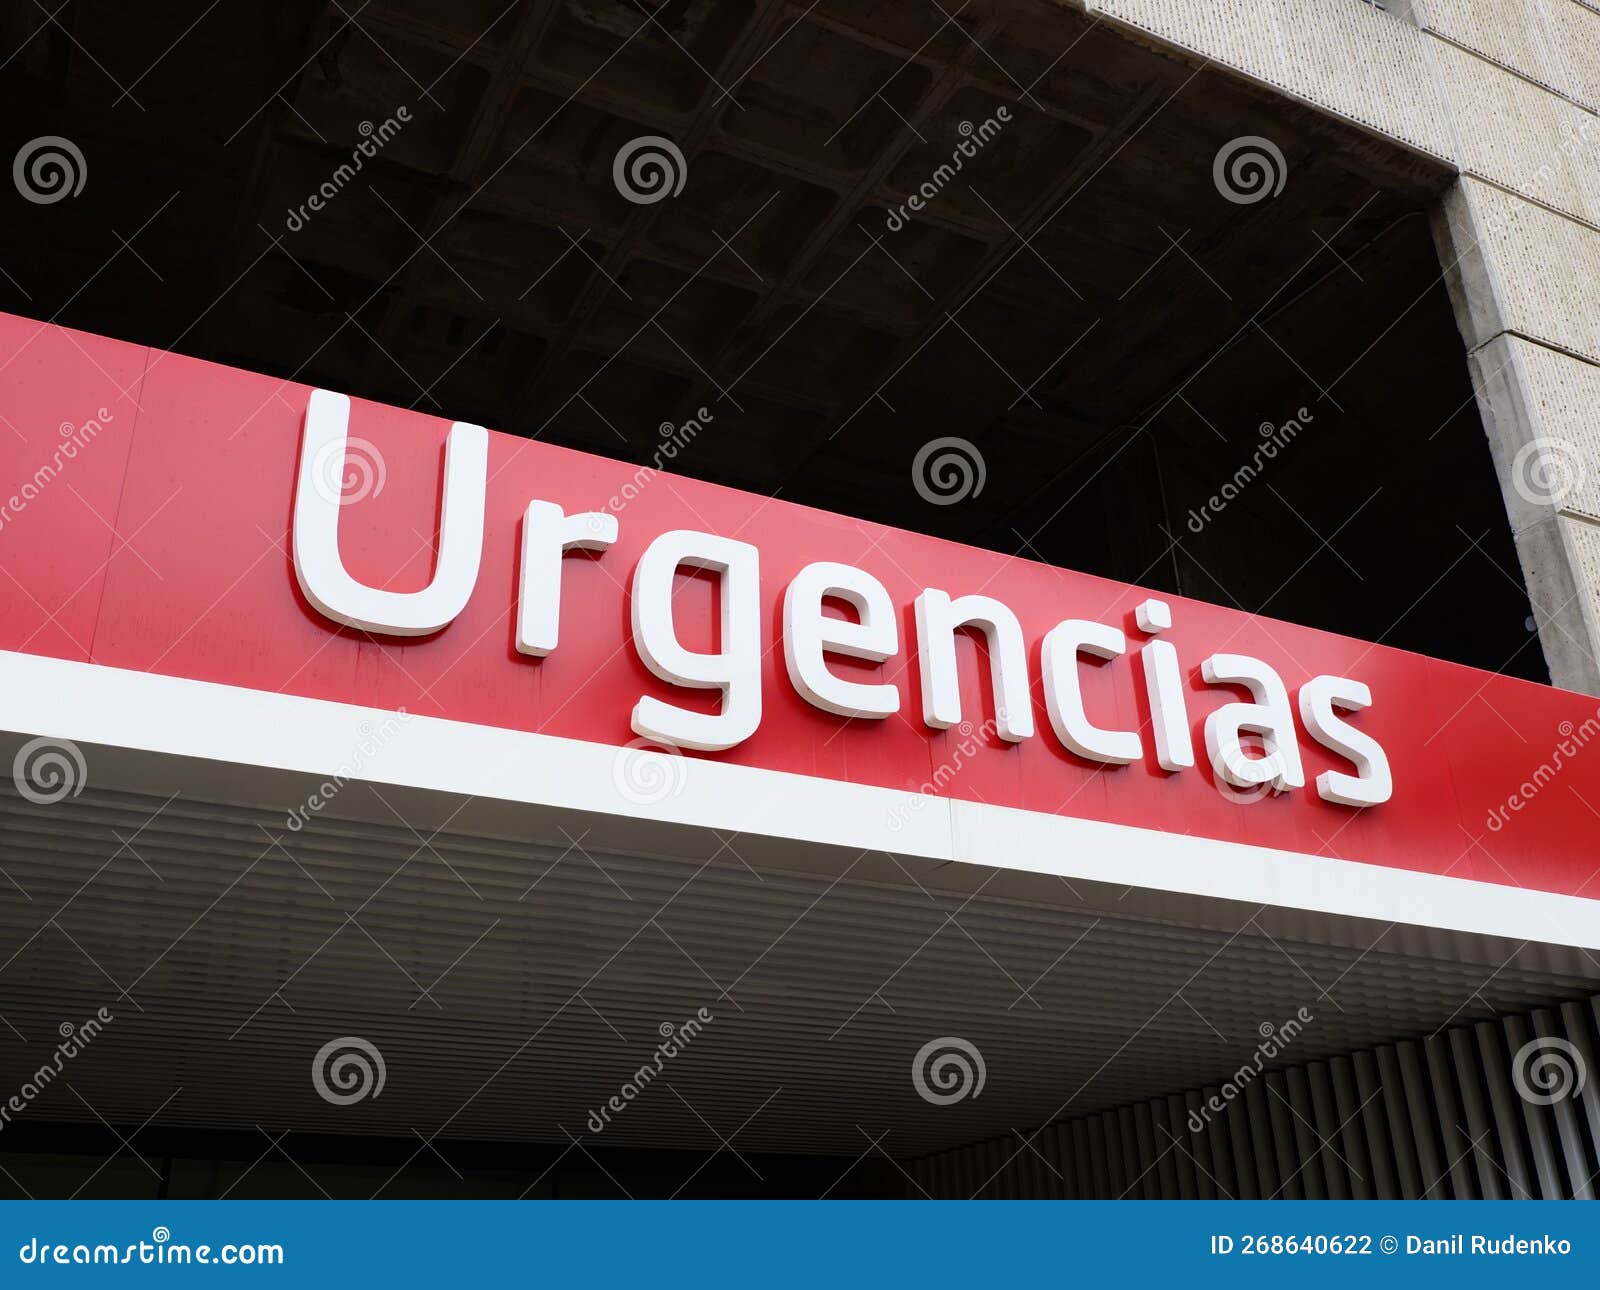 urgencias entrance in valencia, spain